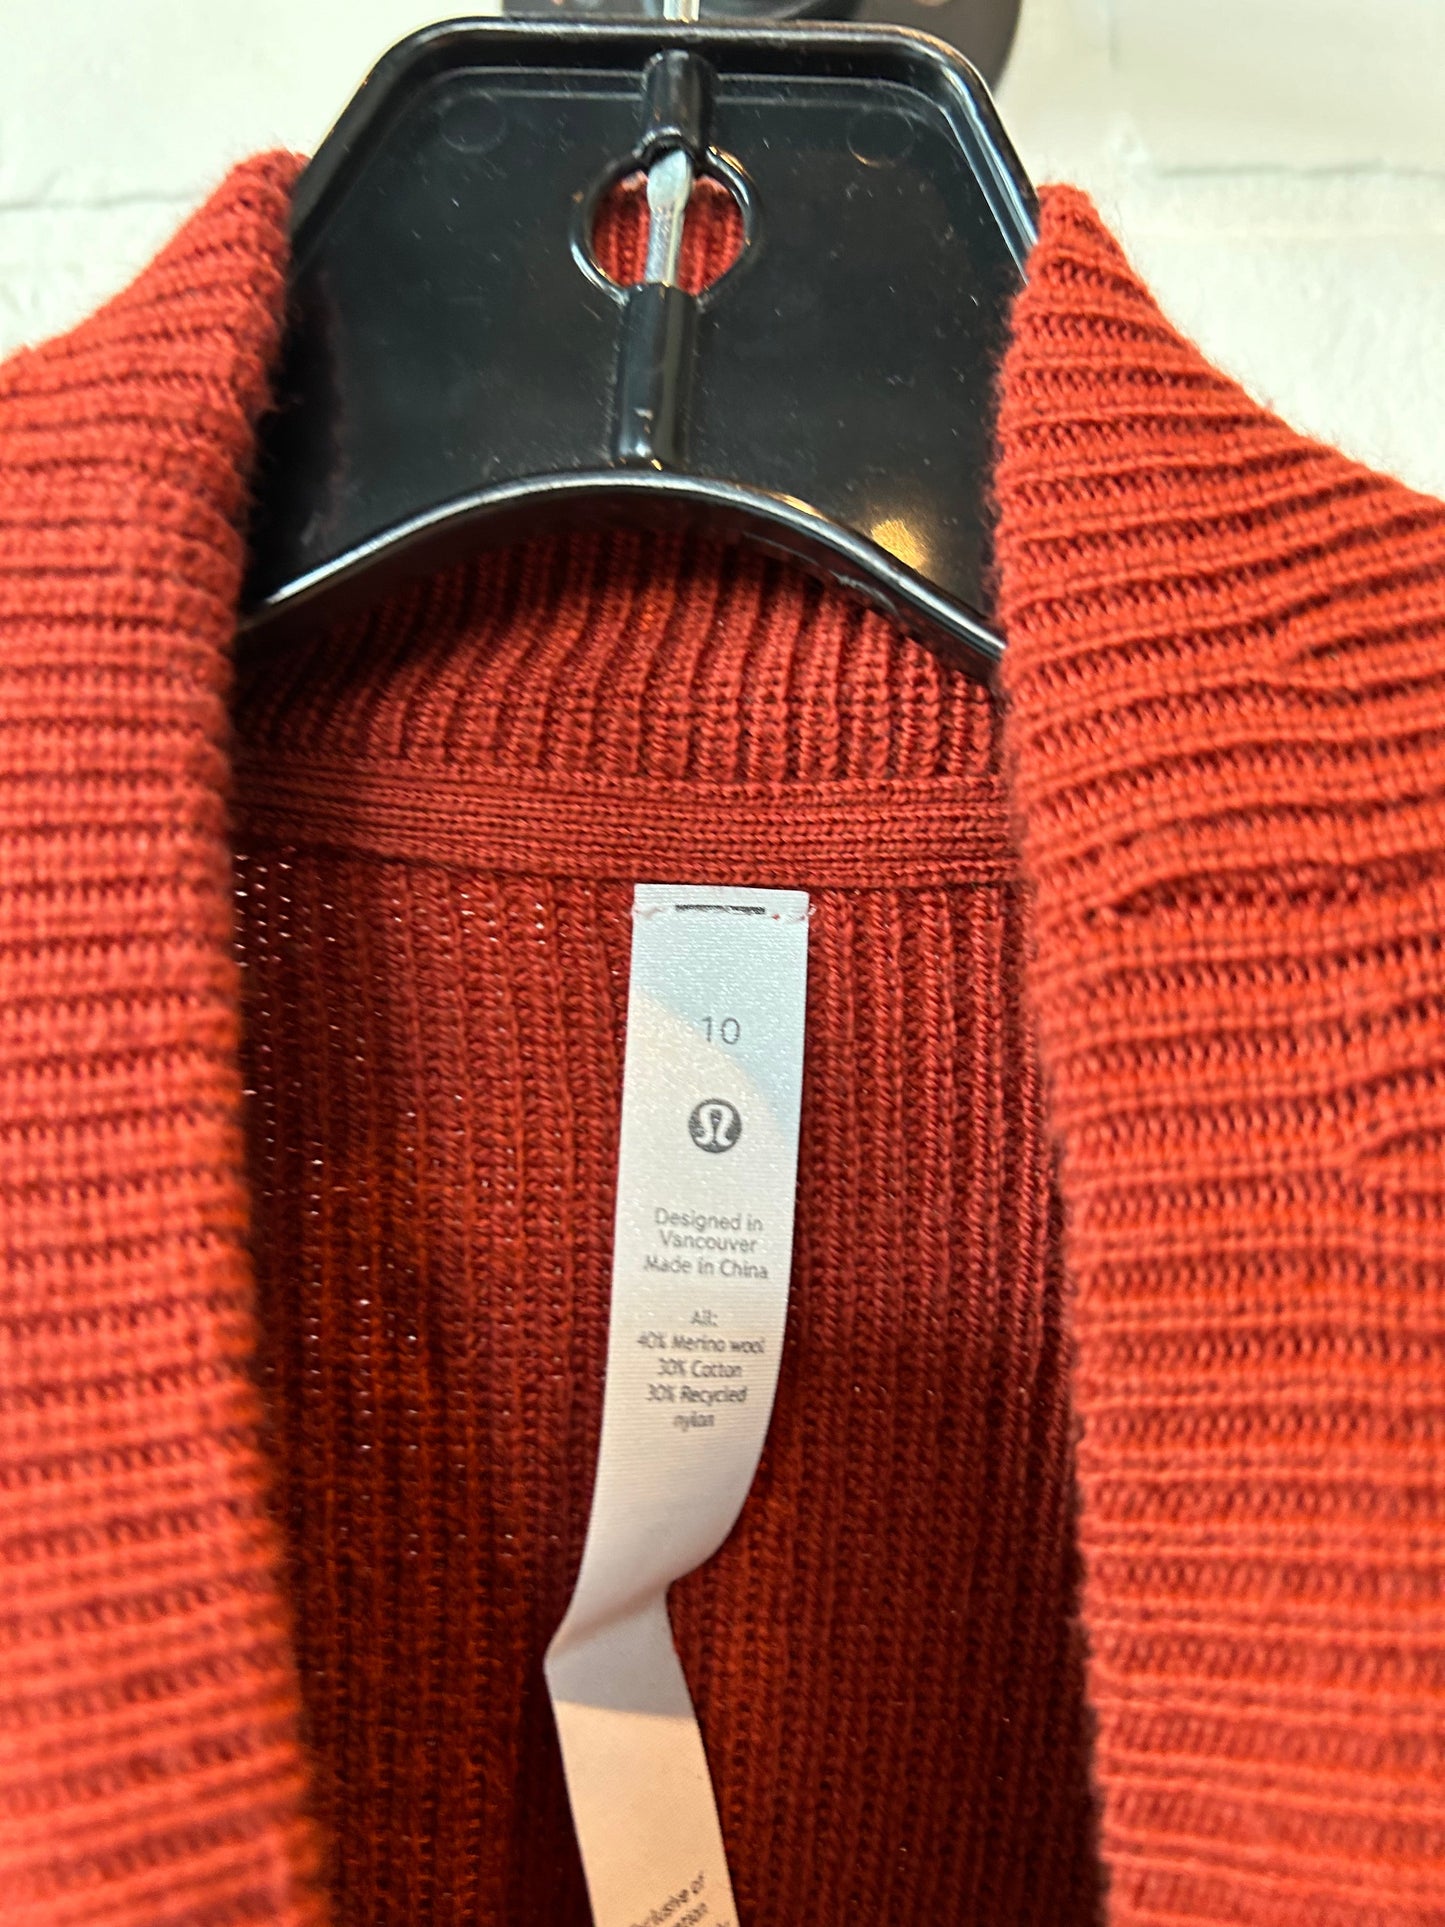 Orange Sweater Lululemon, Size M